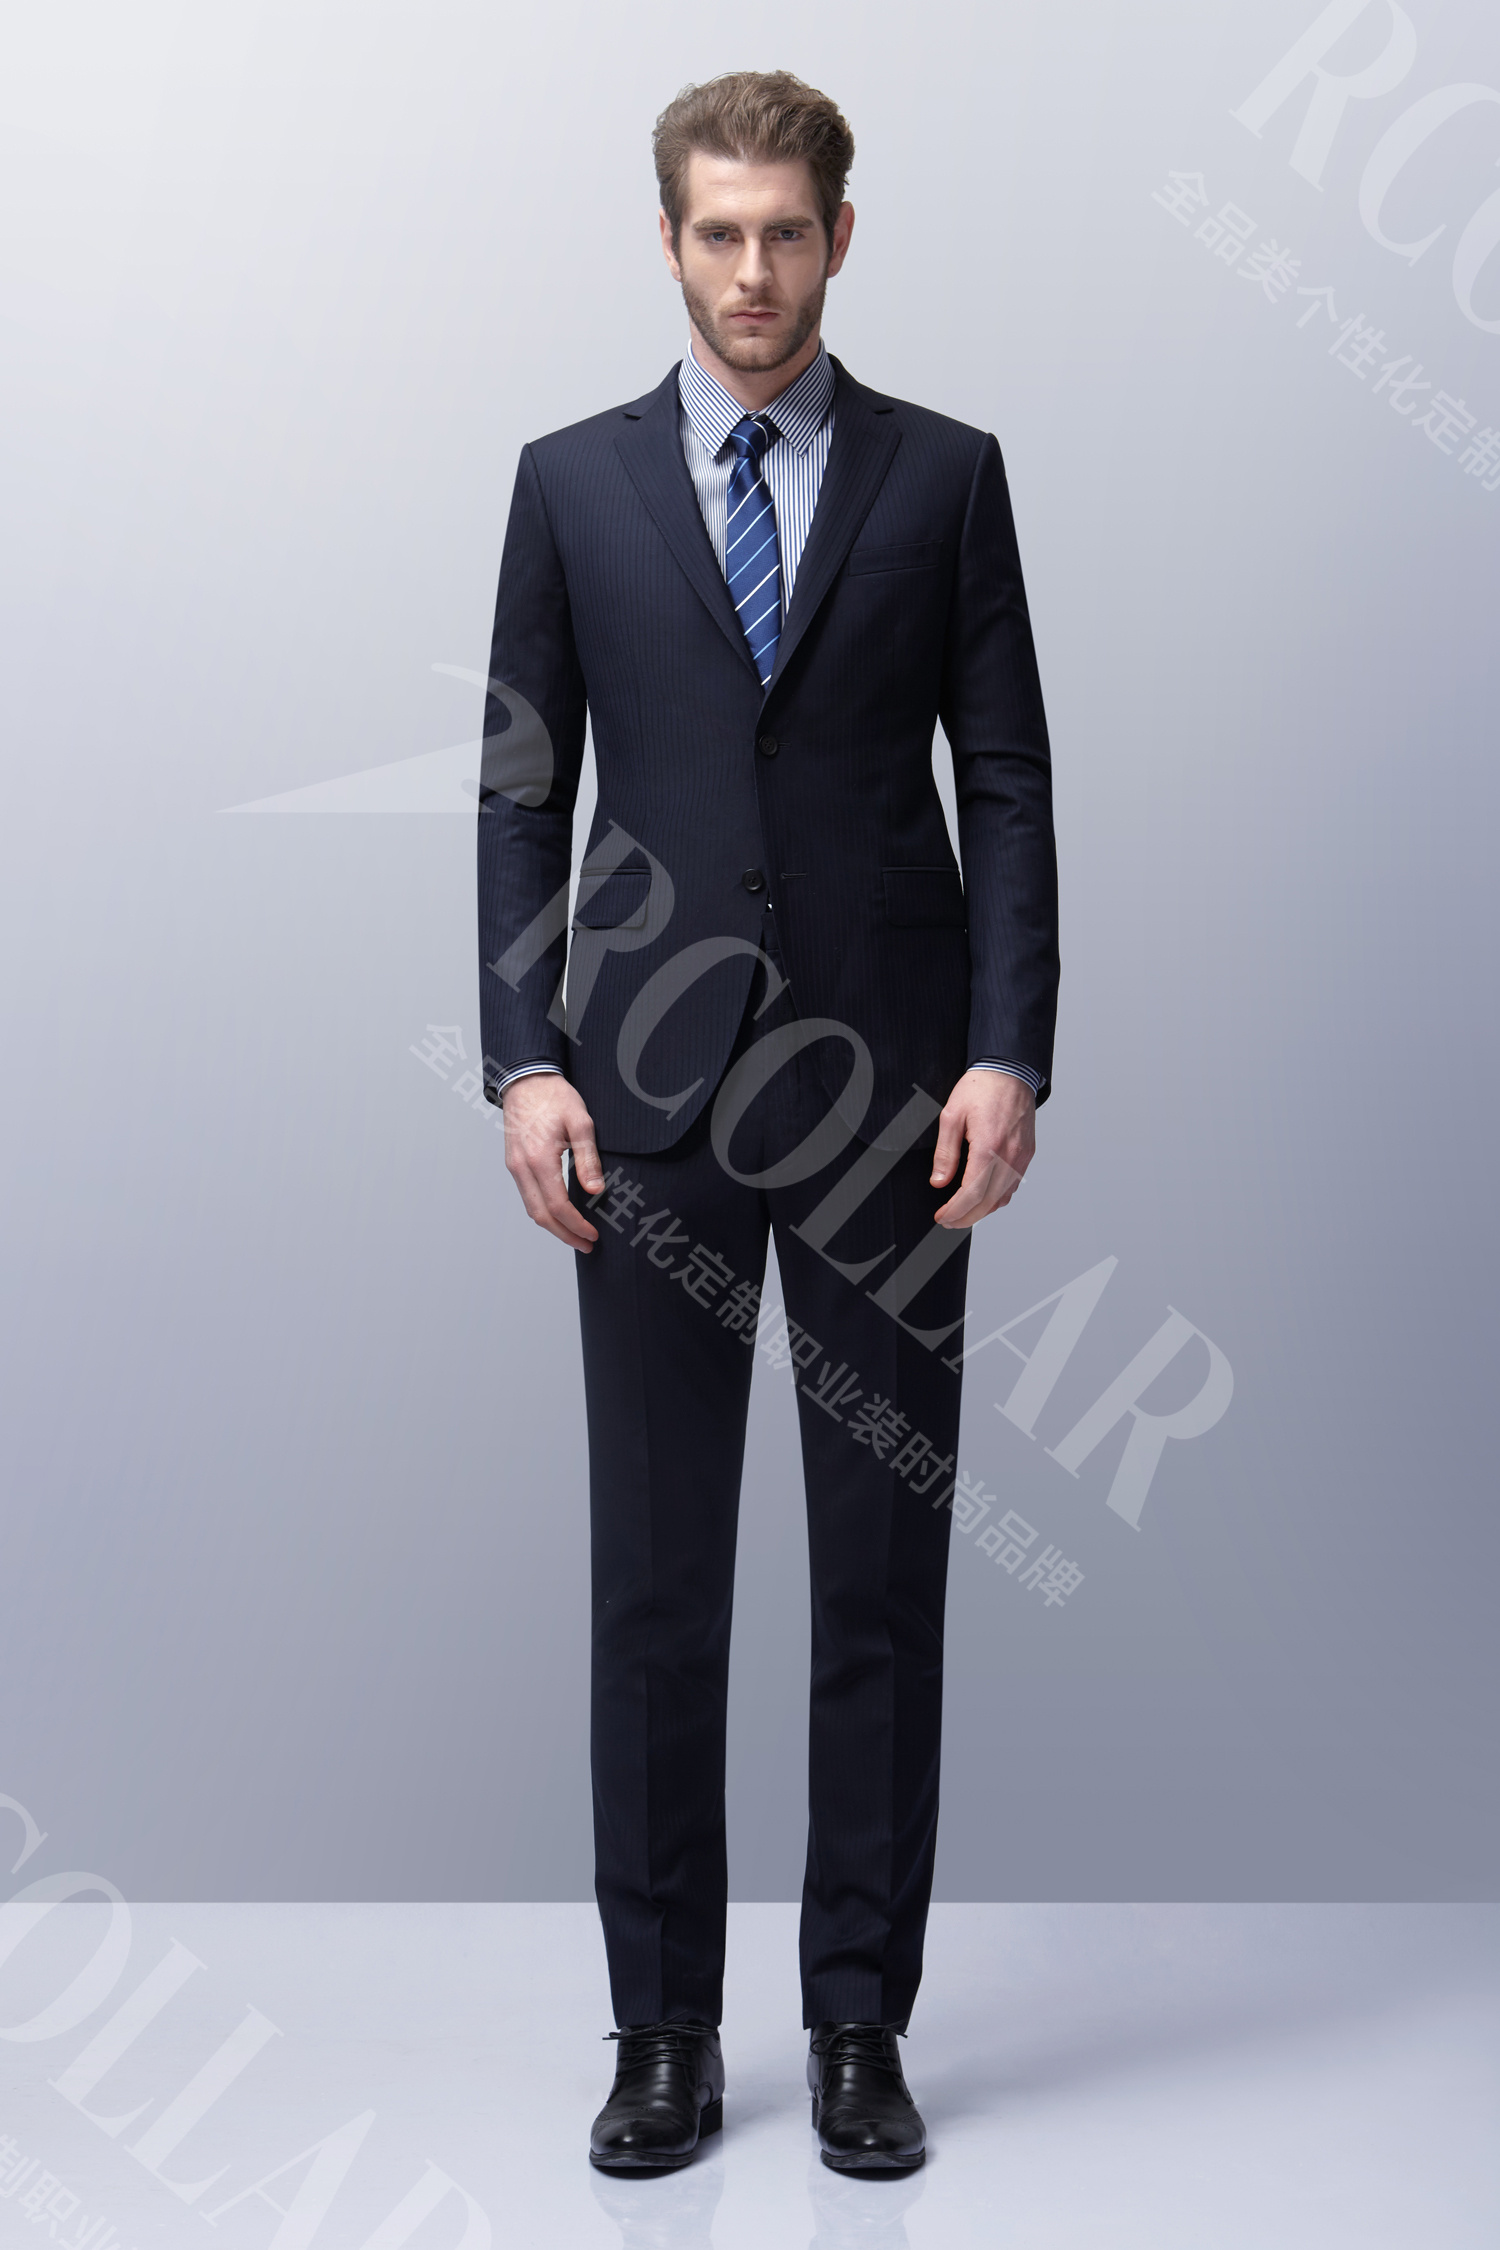 君爵洋服定制丨领型丨西装的基本造型元素-东莞市君爵服饰有限公司